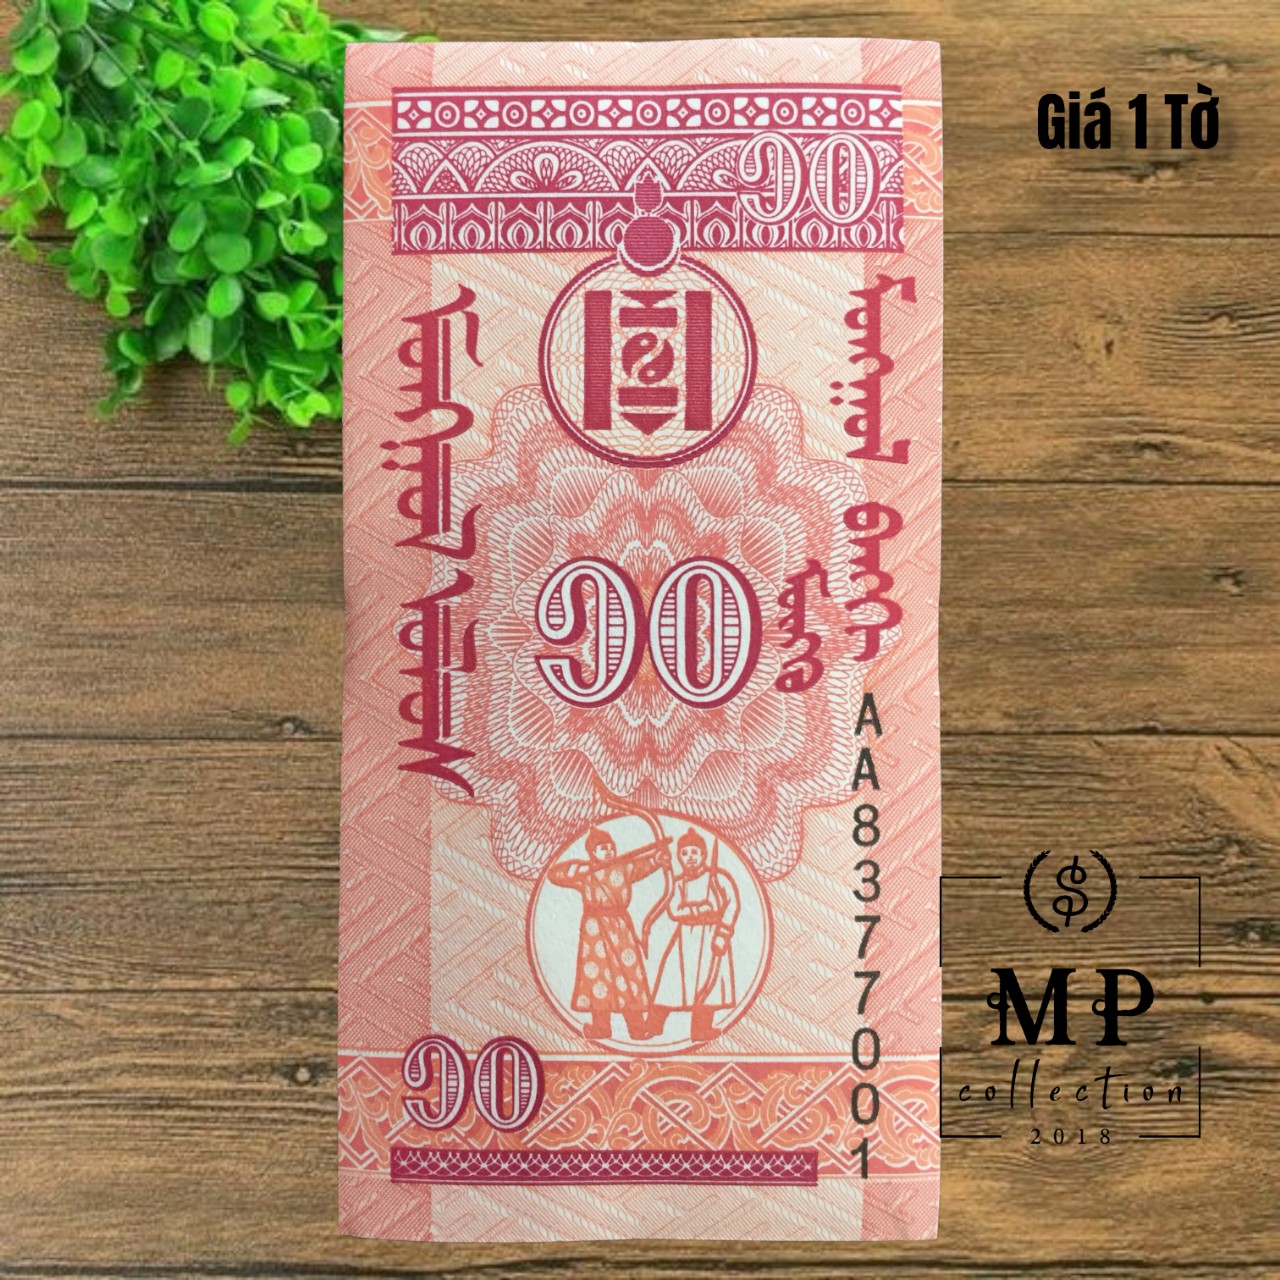 Tờ tiền đứng độc đáo Mông Cổ 10 Mongo, mệnh giá nhỏ và kích thước siêu nhỏ 45x90mm